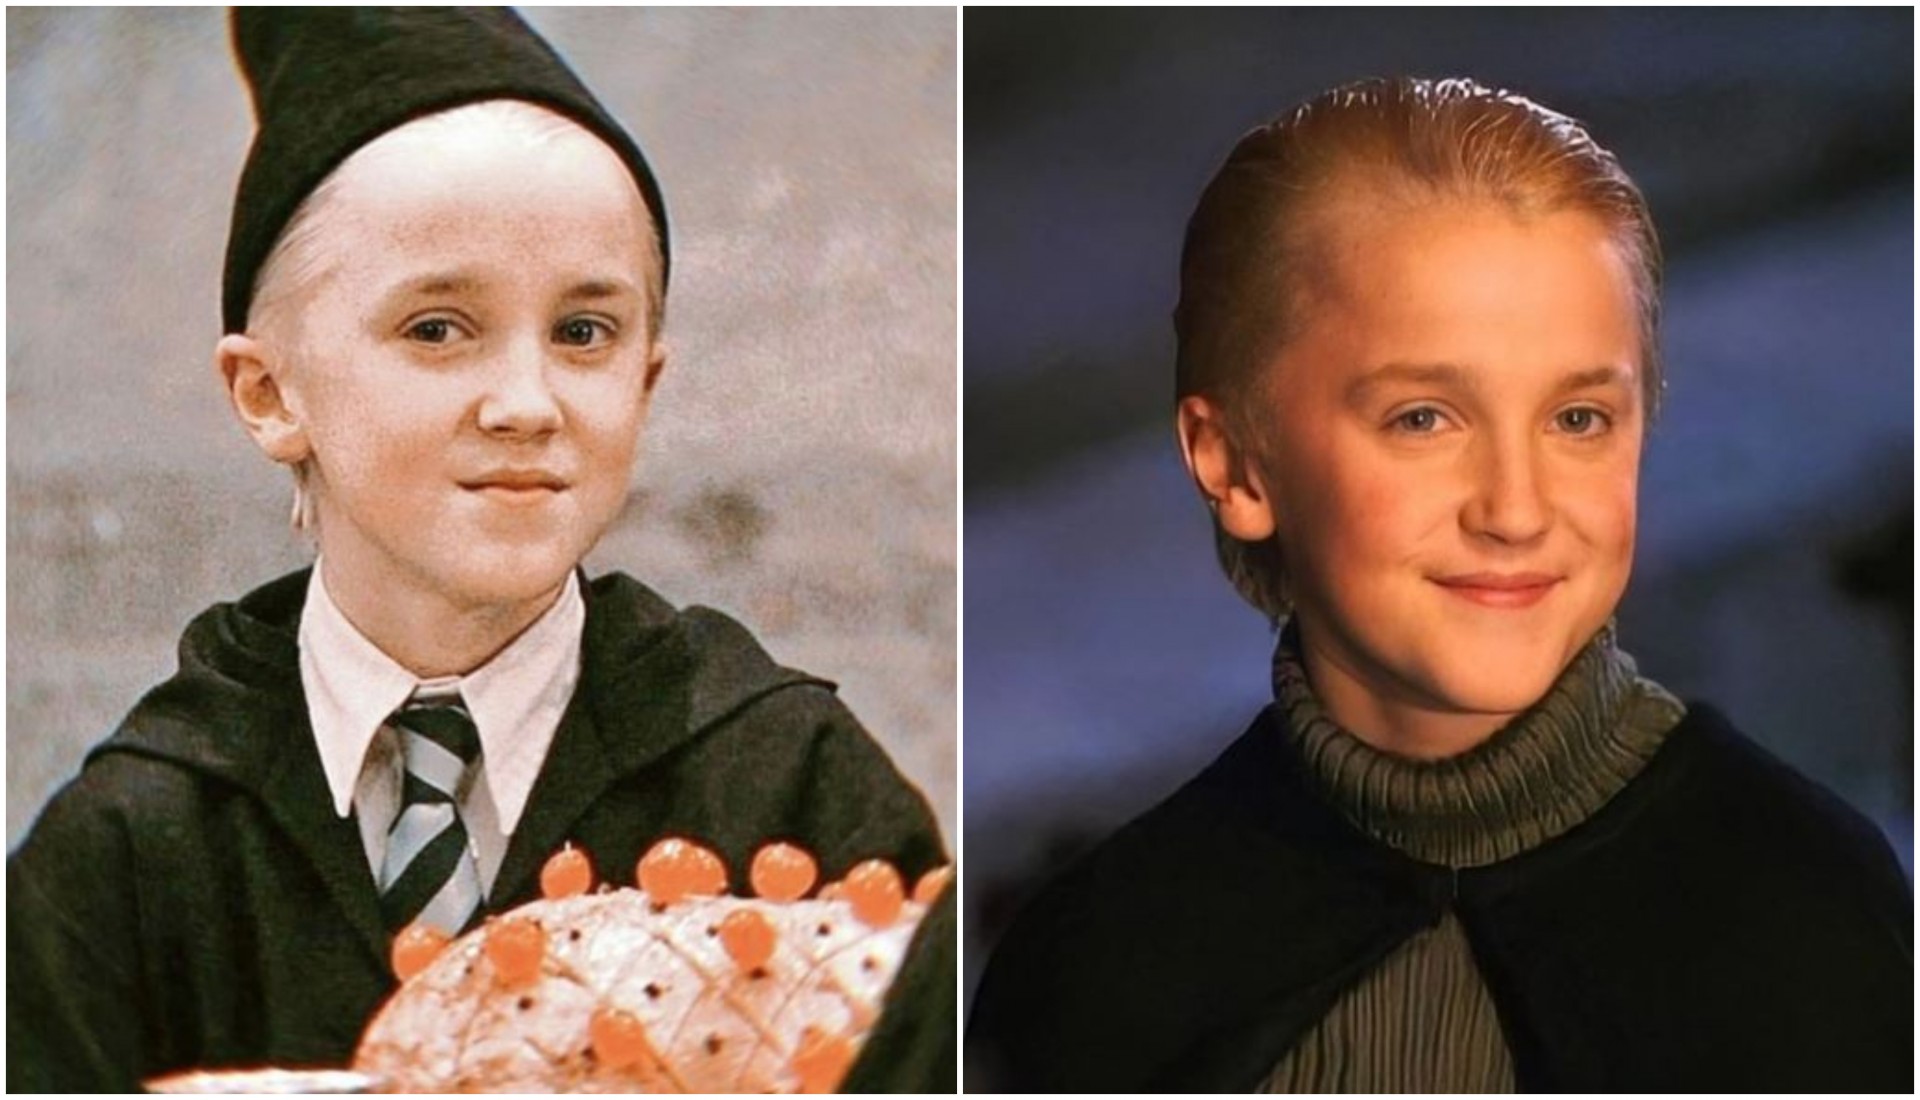 Злобното момче од „Хари Потер“ изгледа како младолик дедо: Малфој денес има 34 години, а обожавателите не престануваат да коментираат една работа